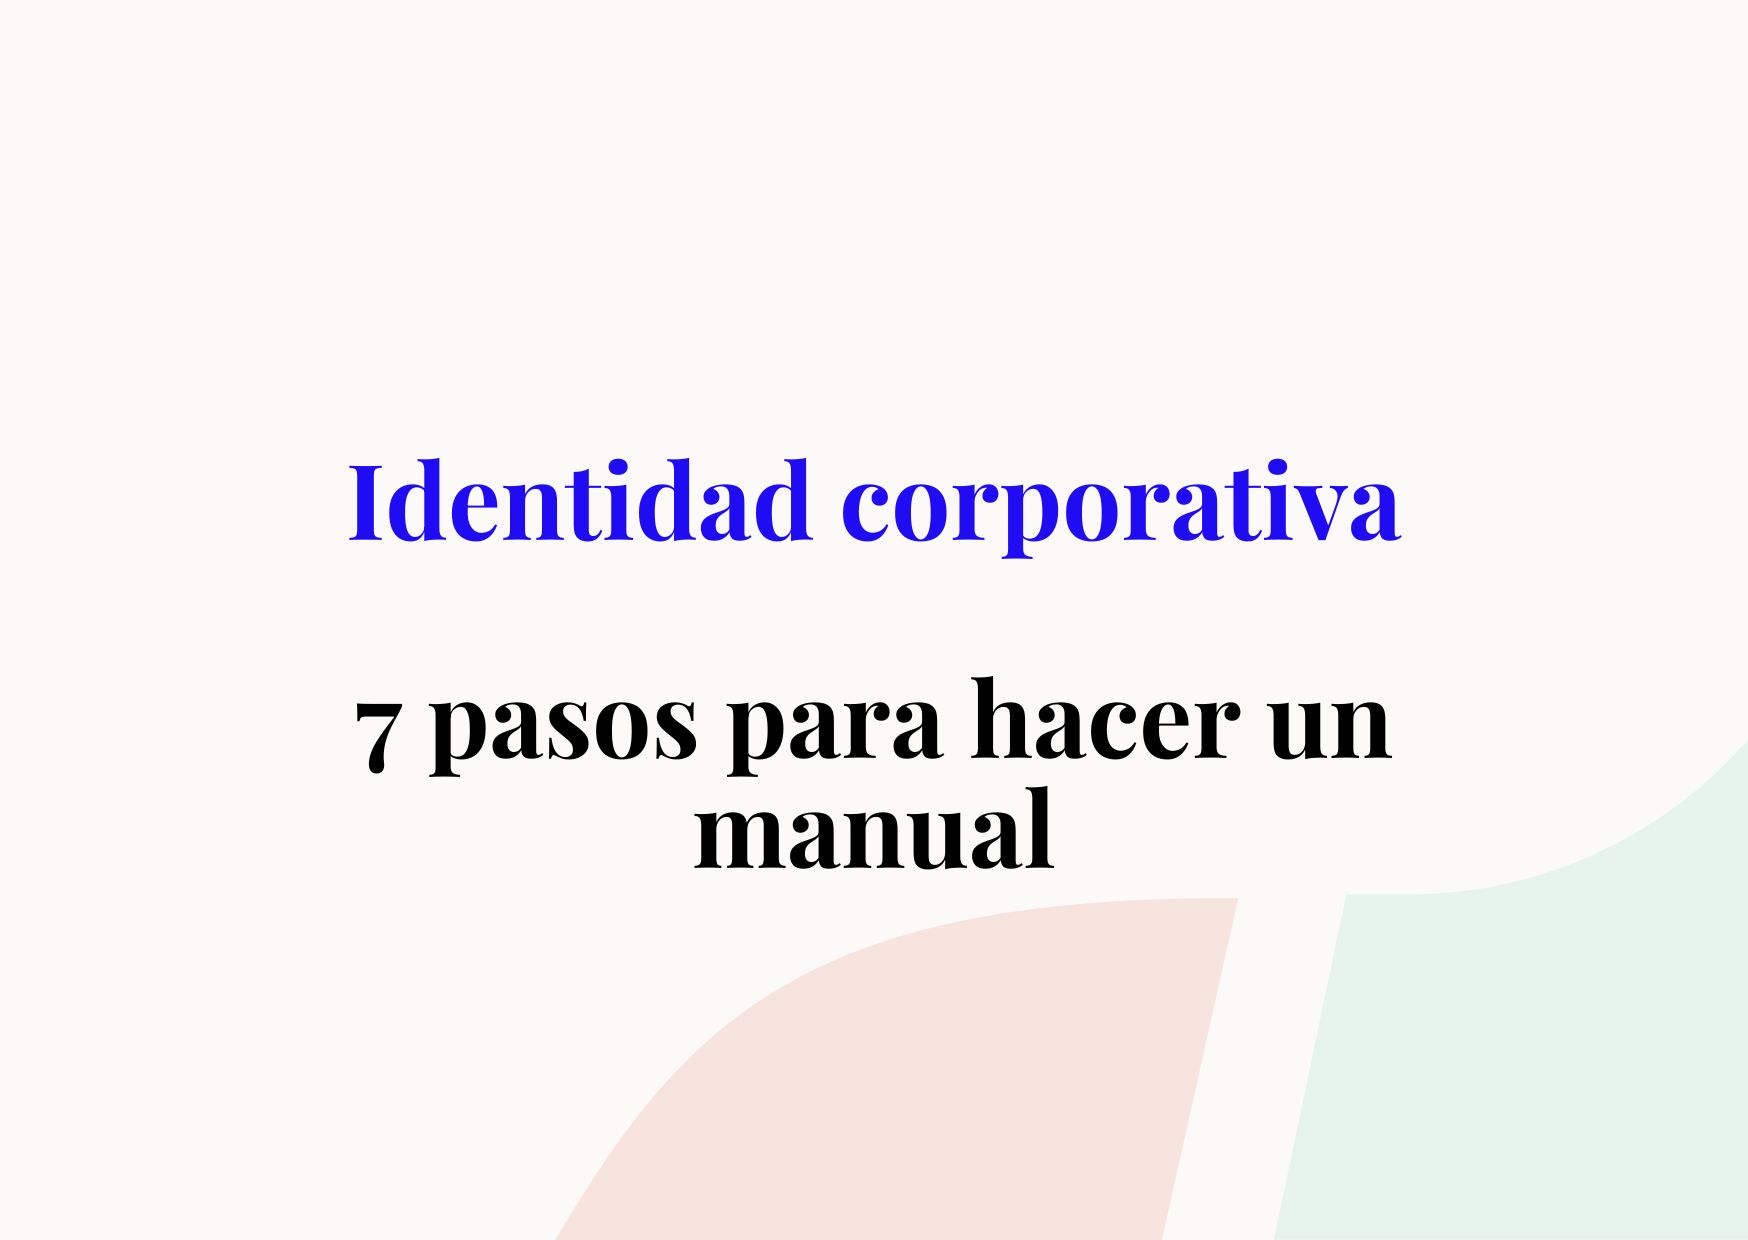 parásito cocina obra maestra Cómo hacer un manual de identidad corporativa en 7 pasos?